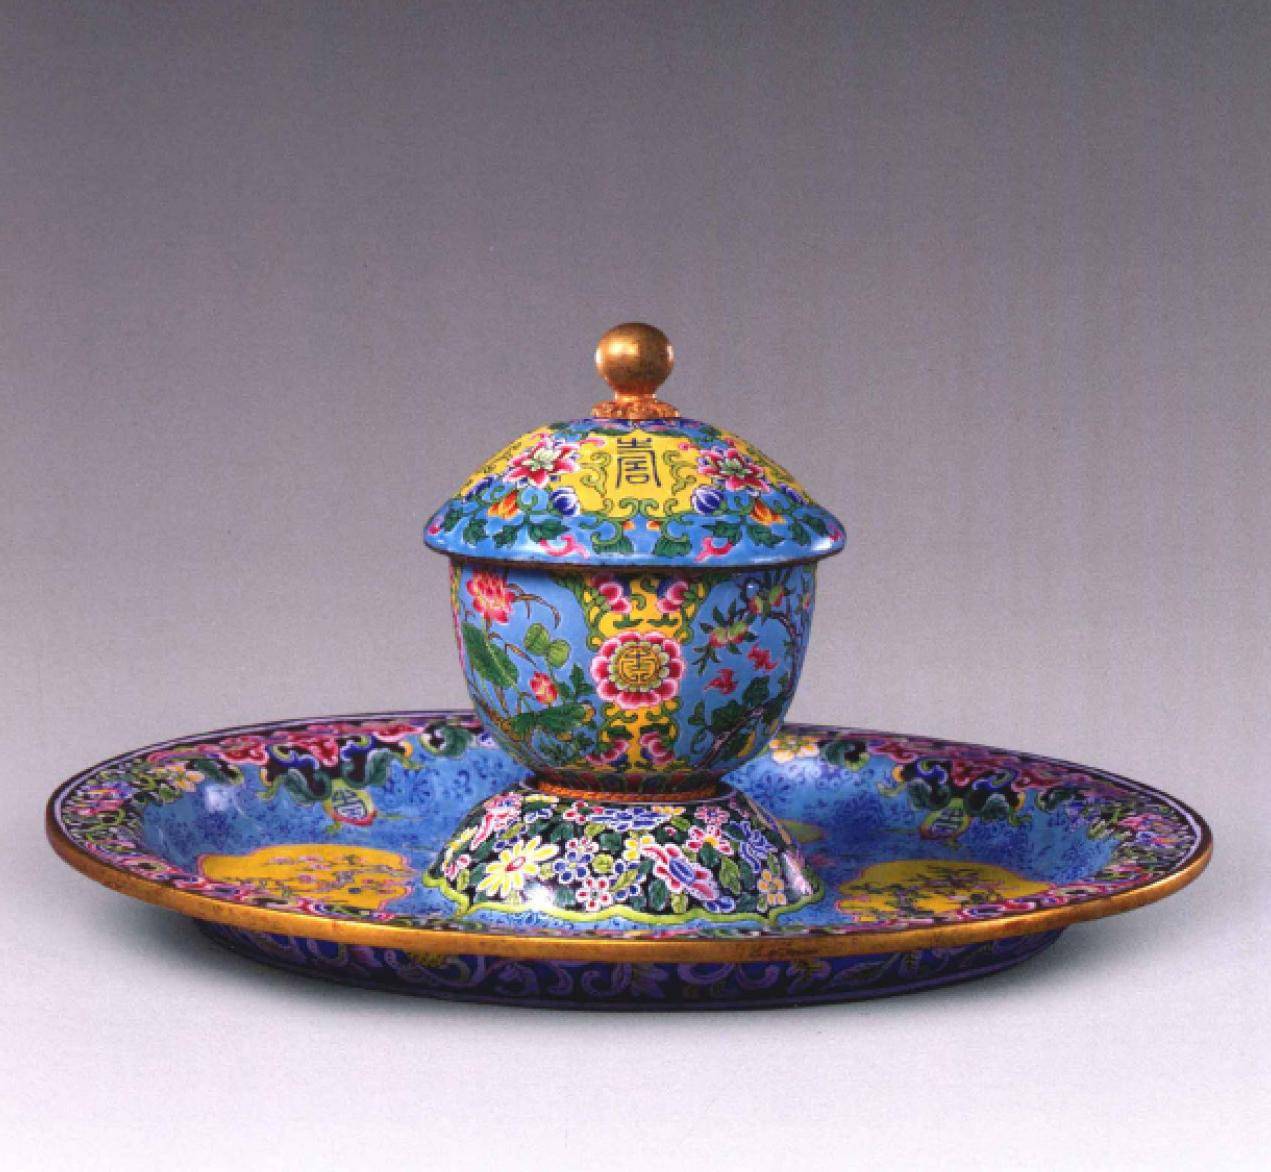 故宫博物院珍藏宝物欣赏,清雍正画珐琅器,精美绝伦的工艺品